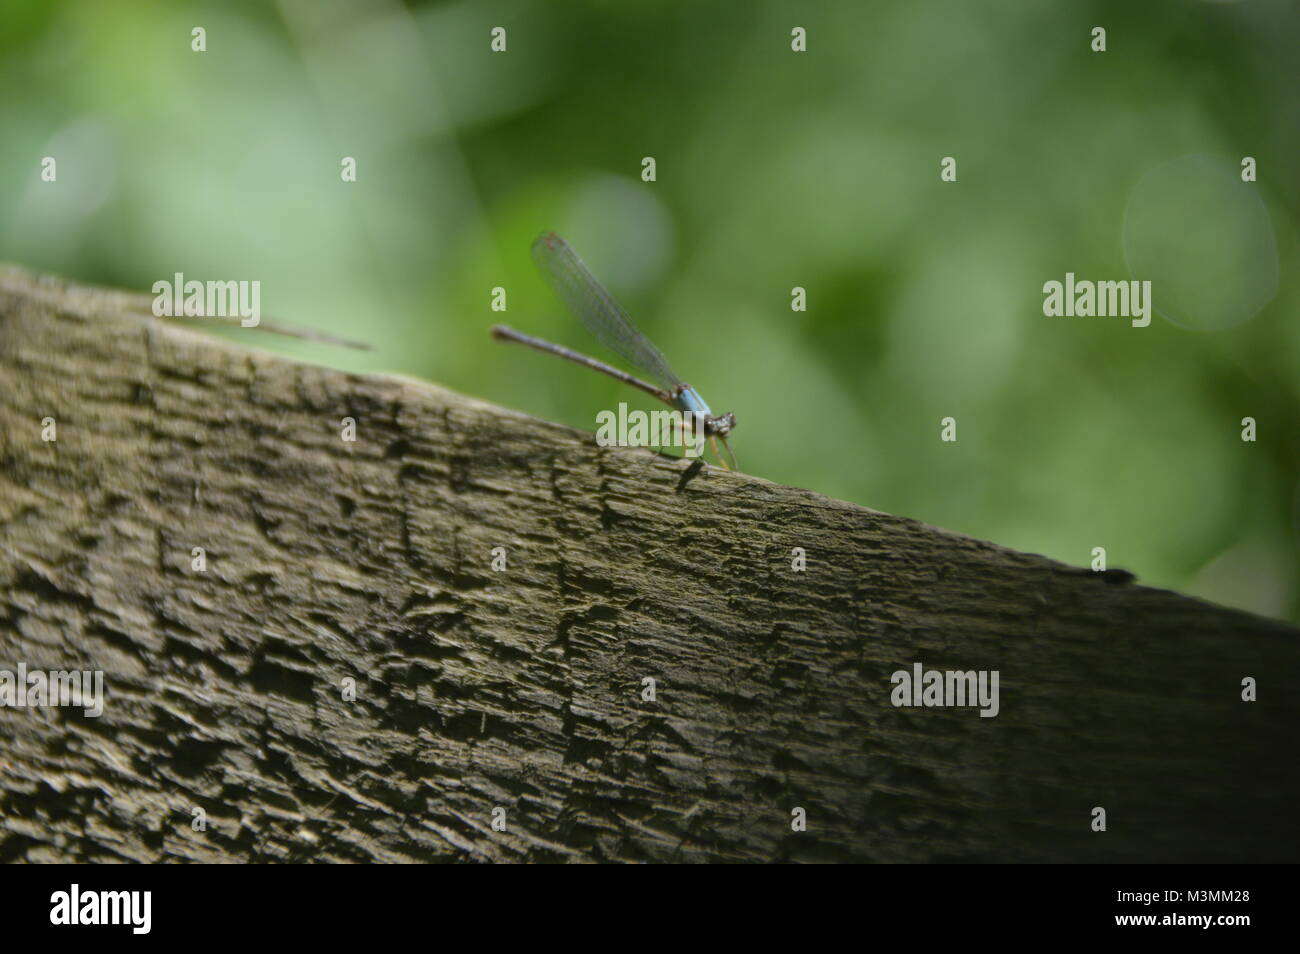 Una foto di una piccola libellula. L'insetto è di colore blu e marrone ed è seduta su un grigio-marrone rock con fogliame verde in background. Foto Stock